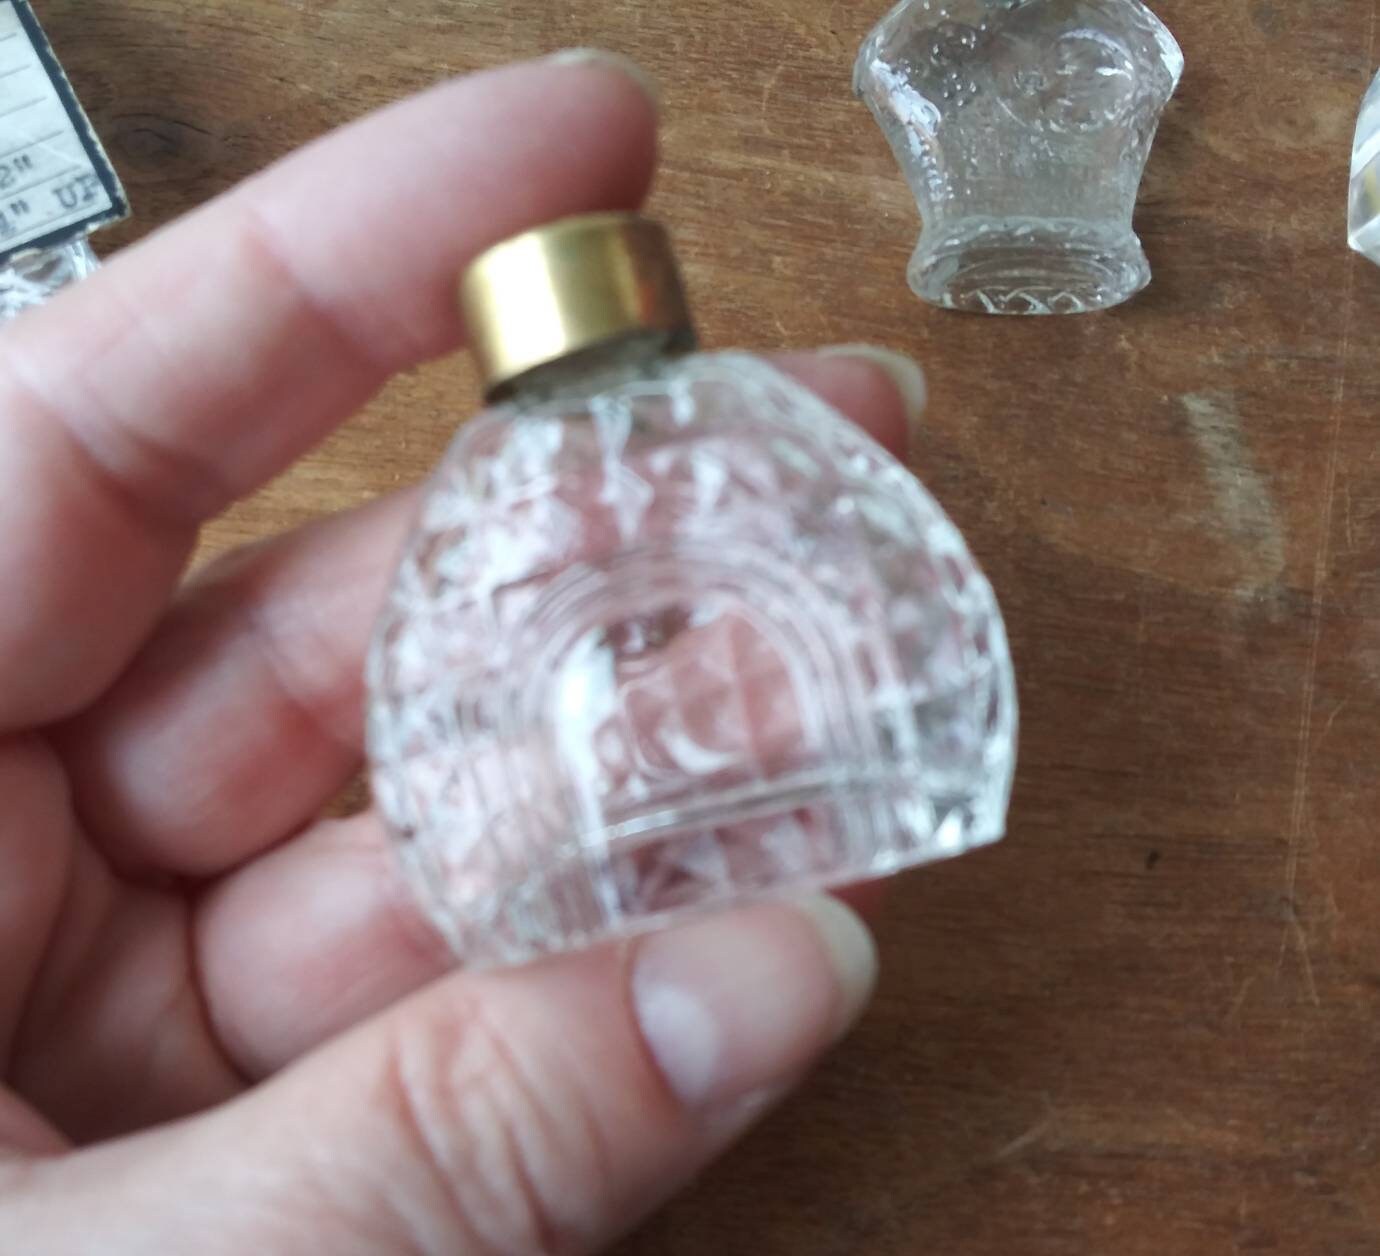 Alte Vintage Miniatur Duft oder Parfüm Flasche Korken Remover  Stockfotografie - Alamy